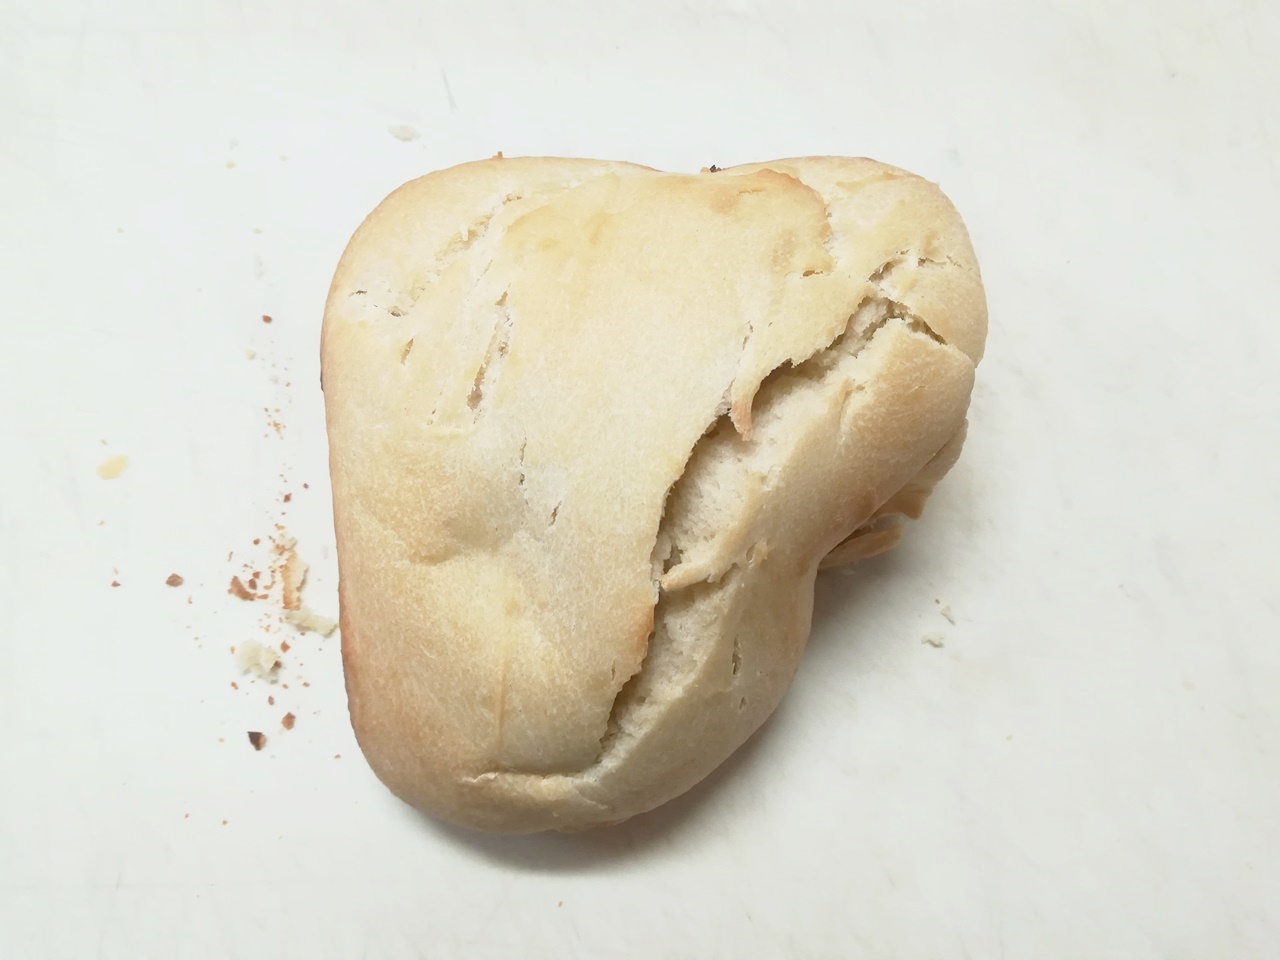 Pembuatan Roti Gagal Karena Kurangnya Fermentasi パン作り 発酵不足で失敗 Japan Indonesia Blog